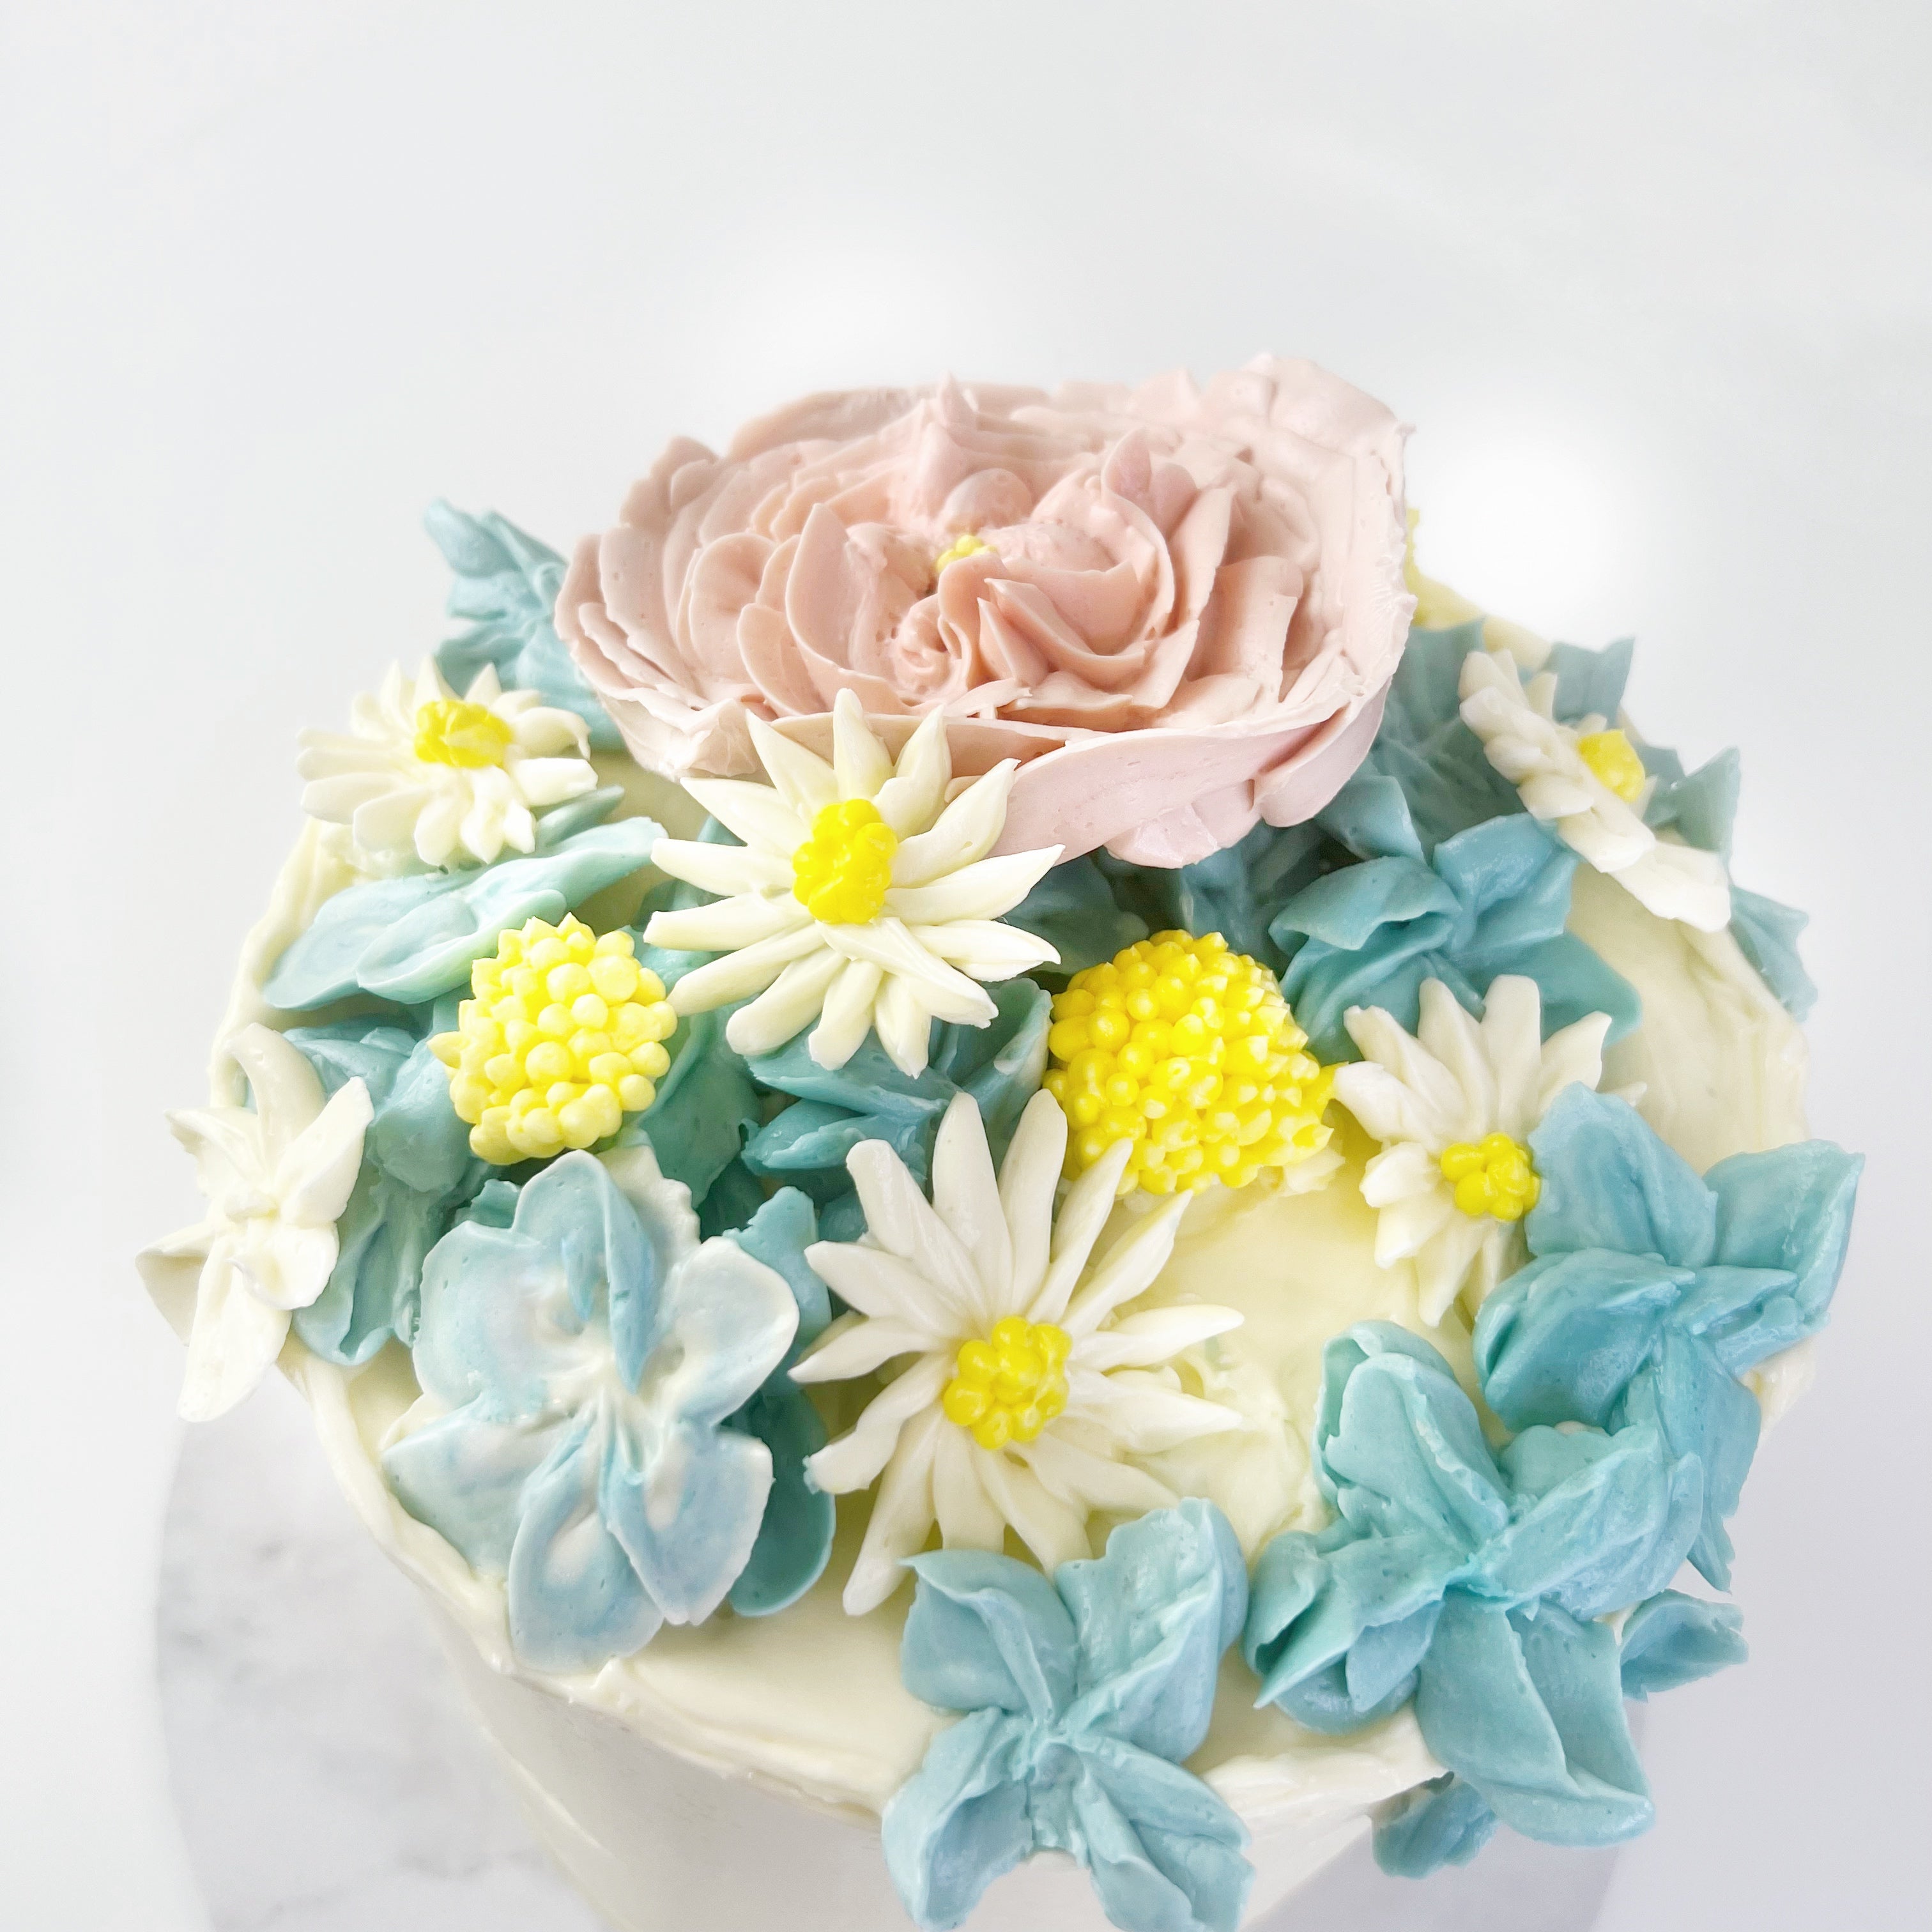 Buttercream Flowers Class - 1 Day Course | Fair Cake